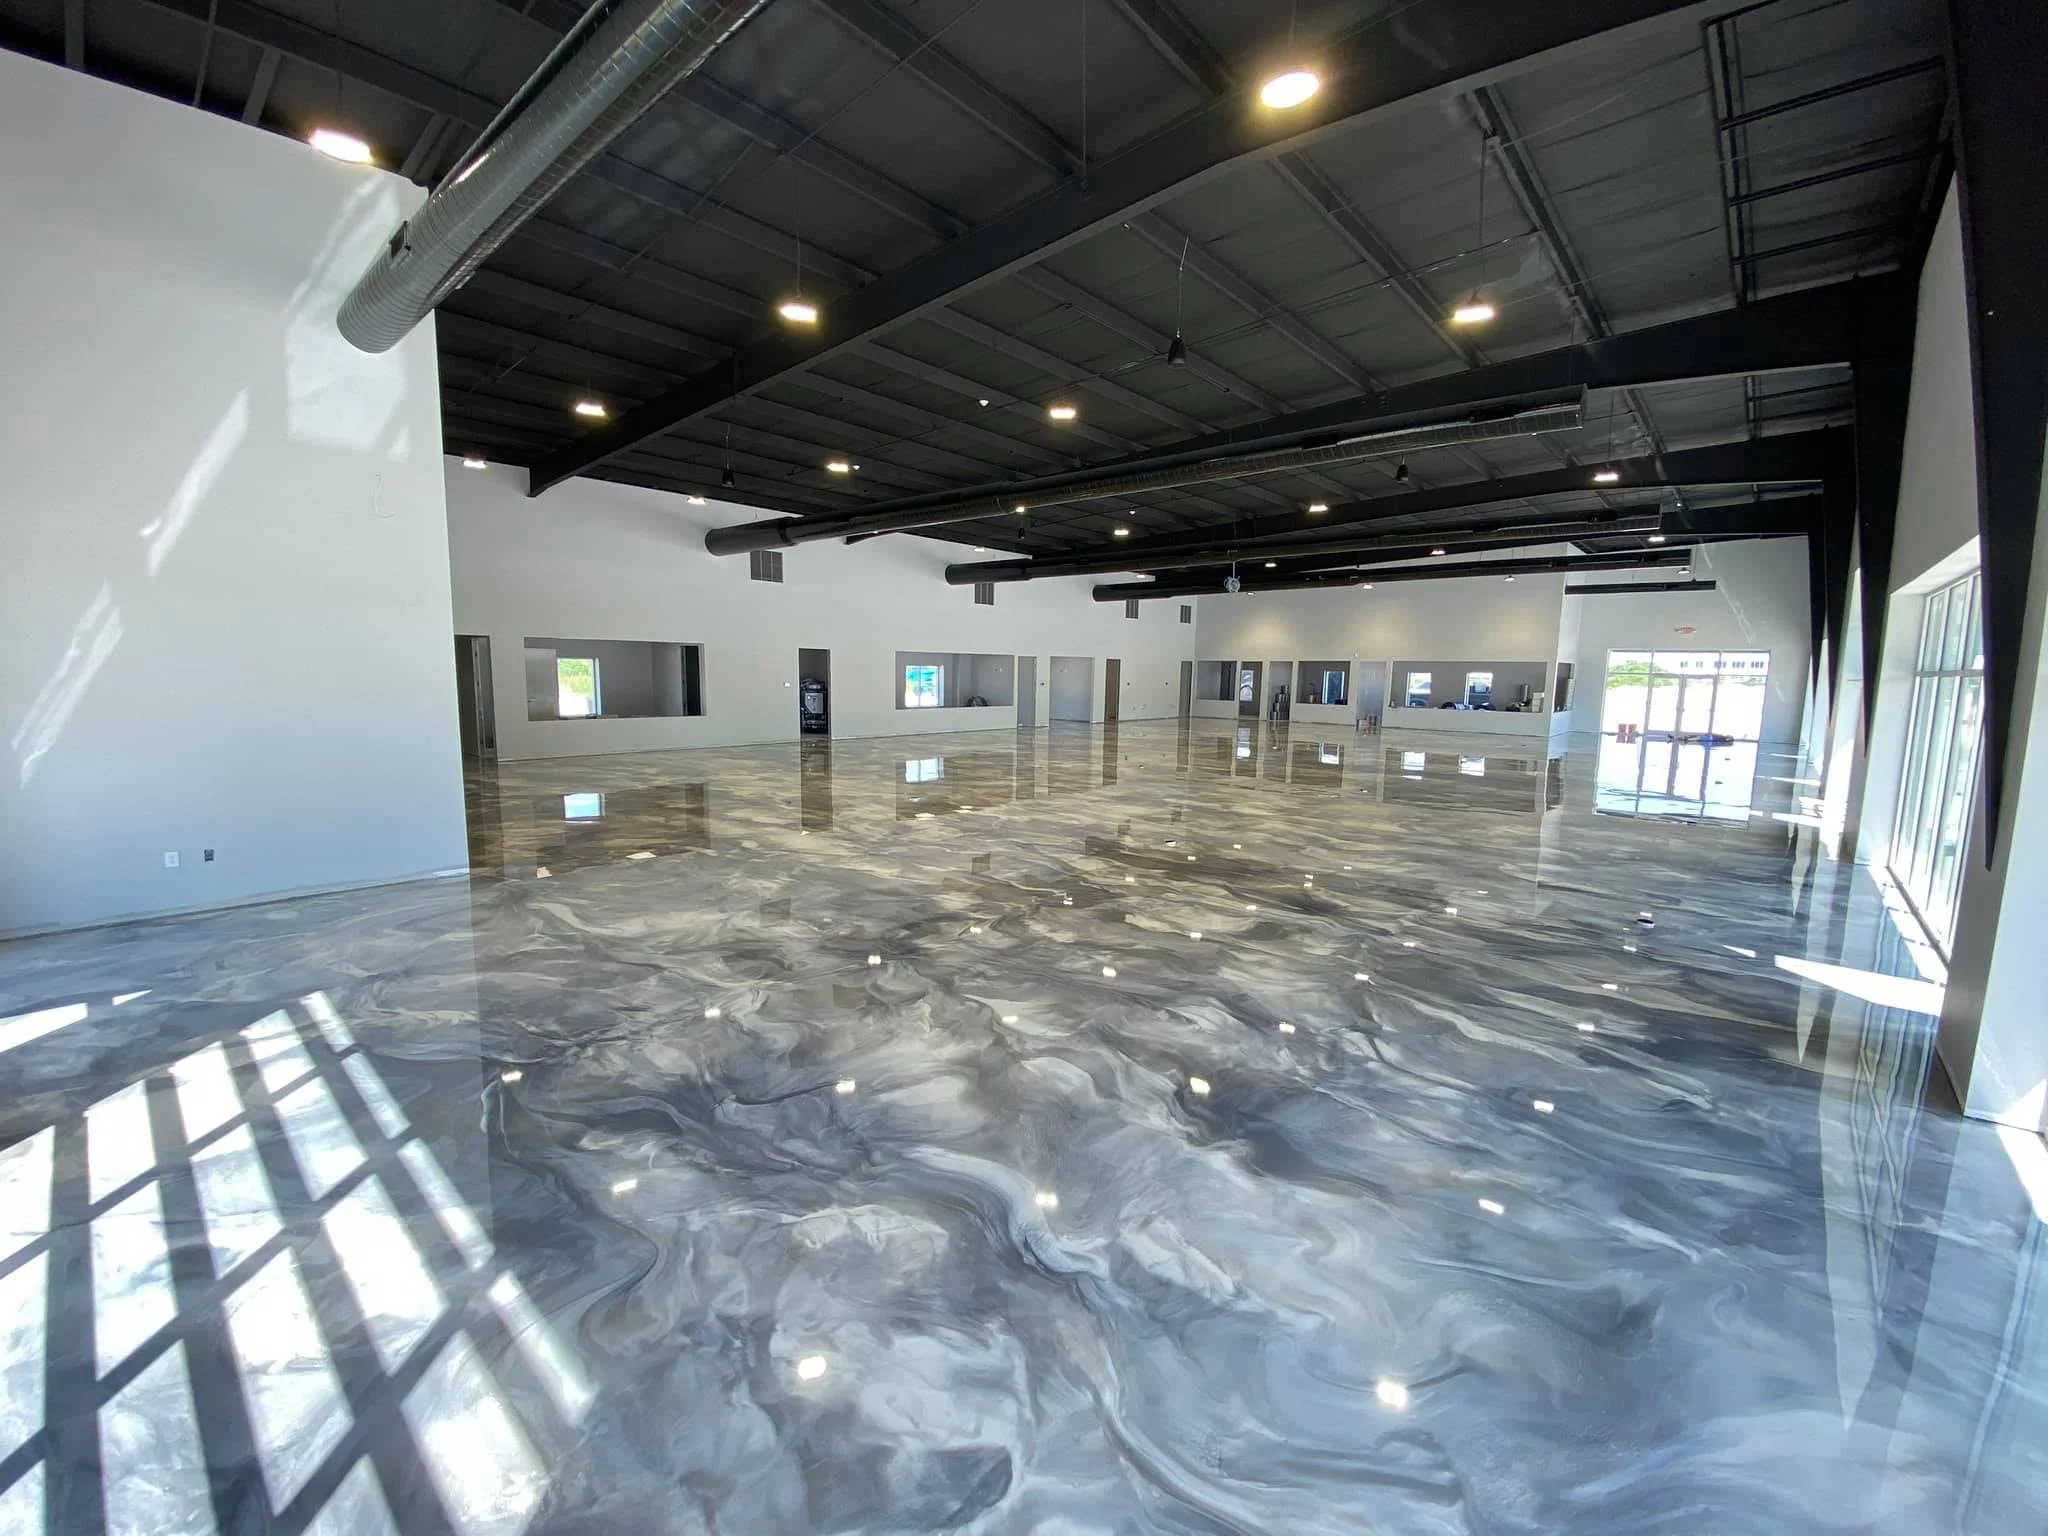 Commercial Epoxy Flooring
